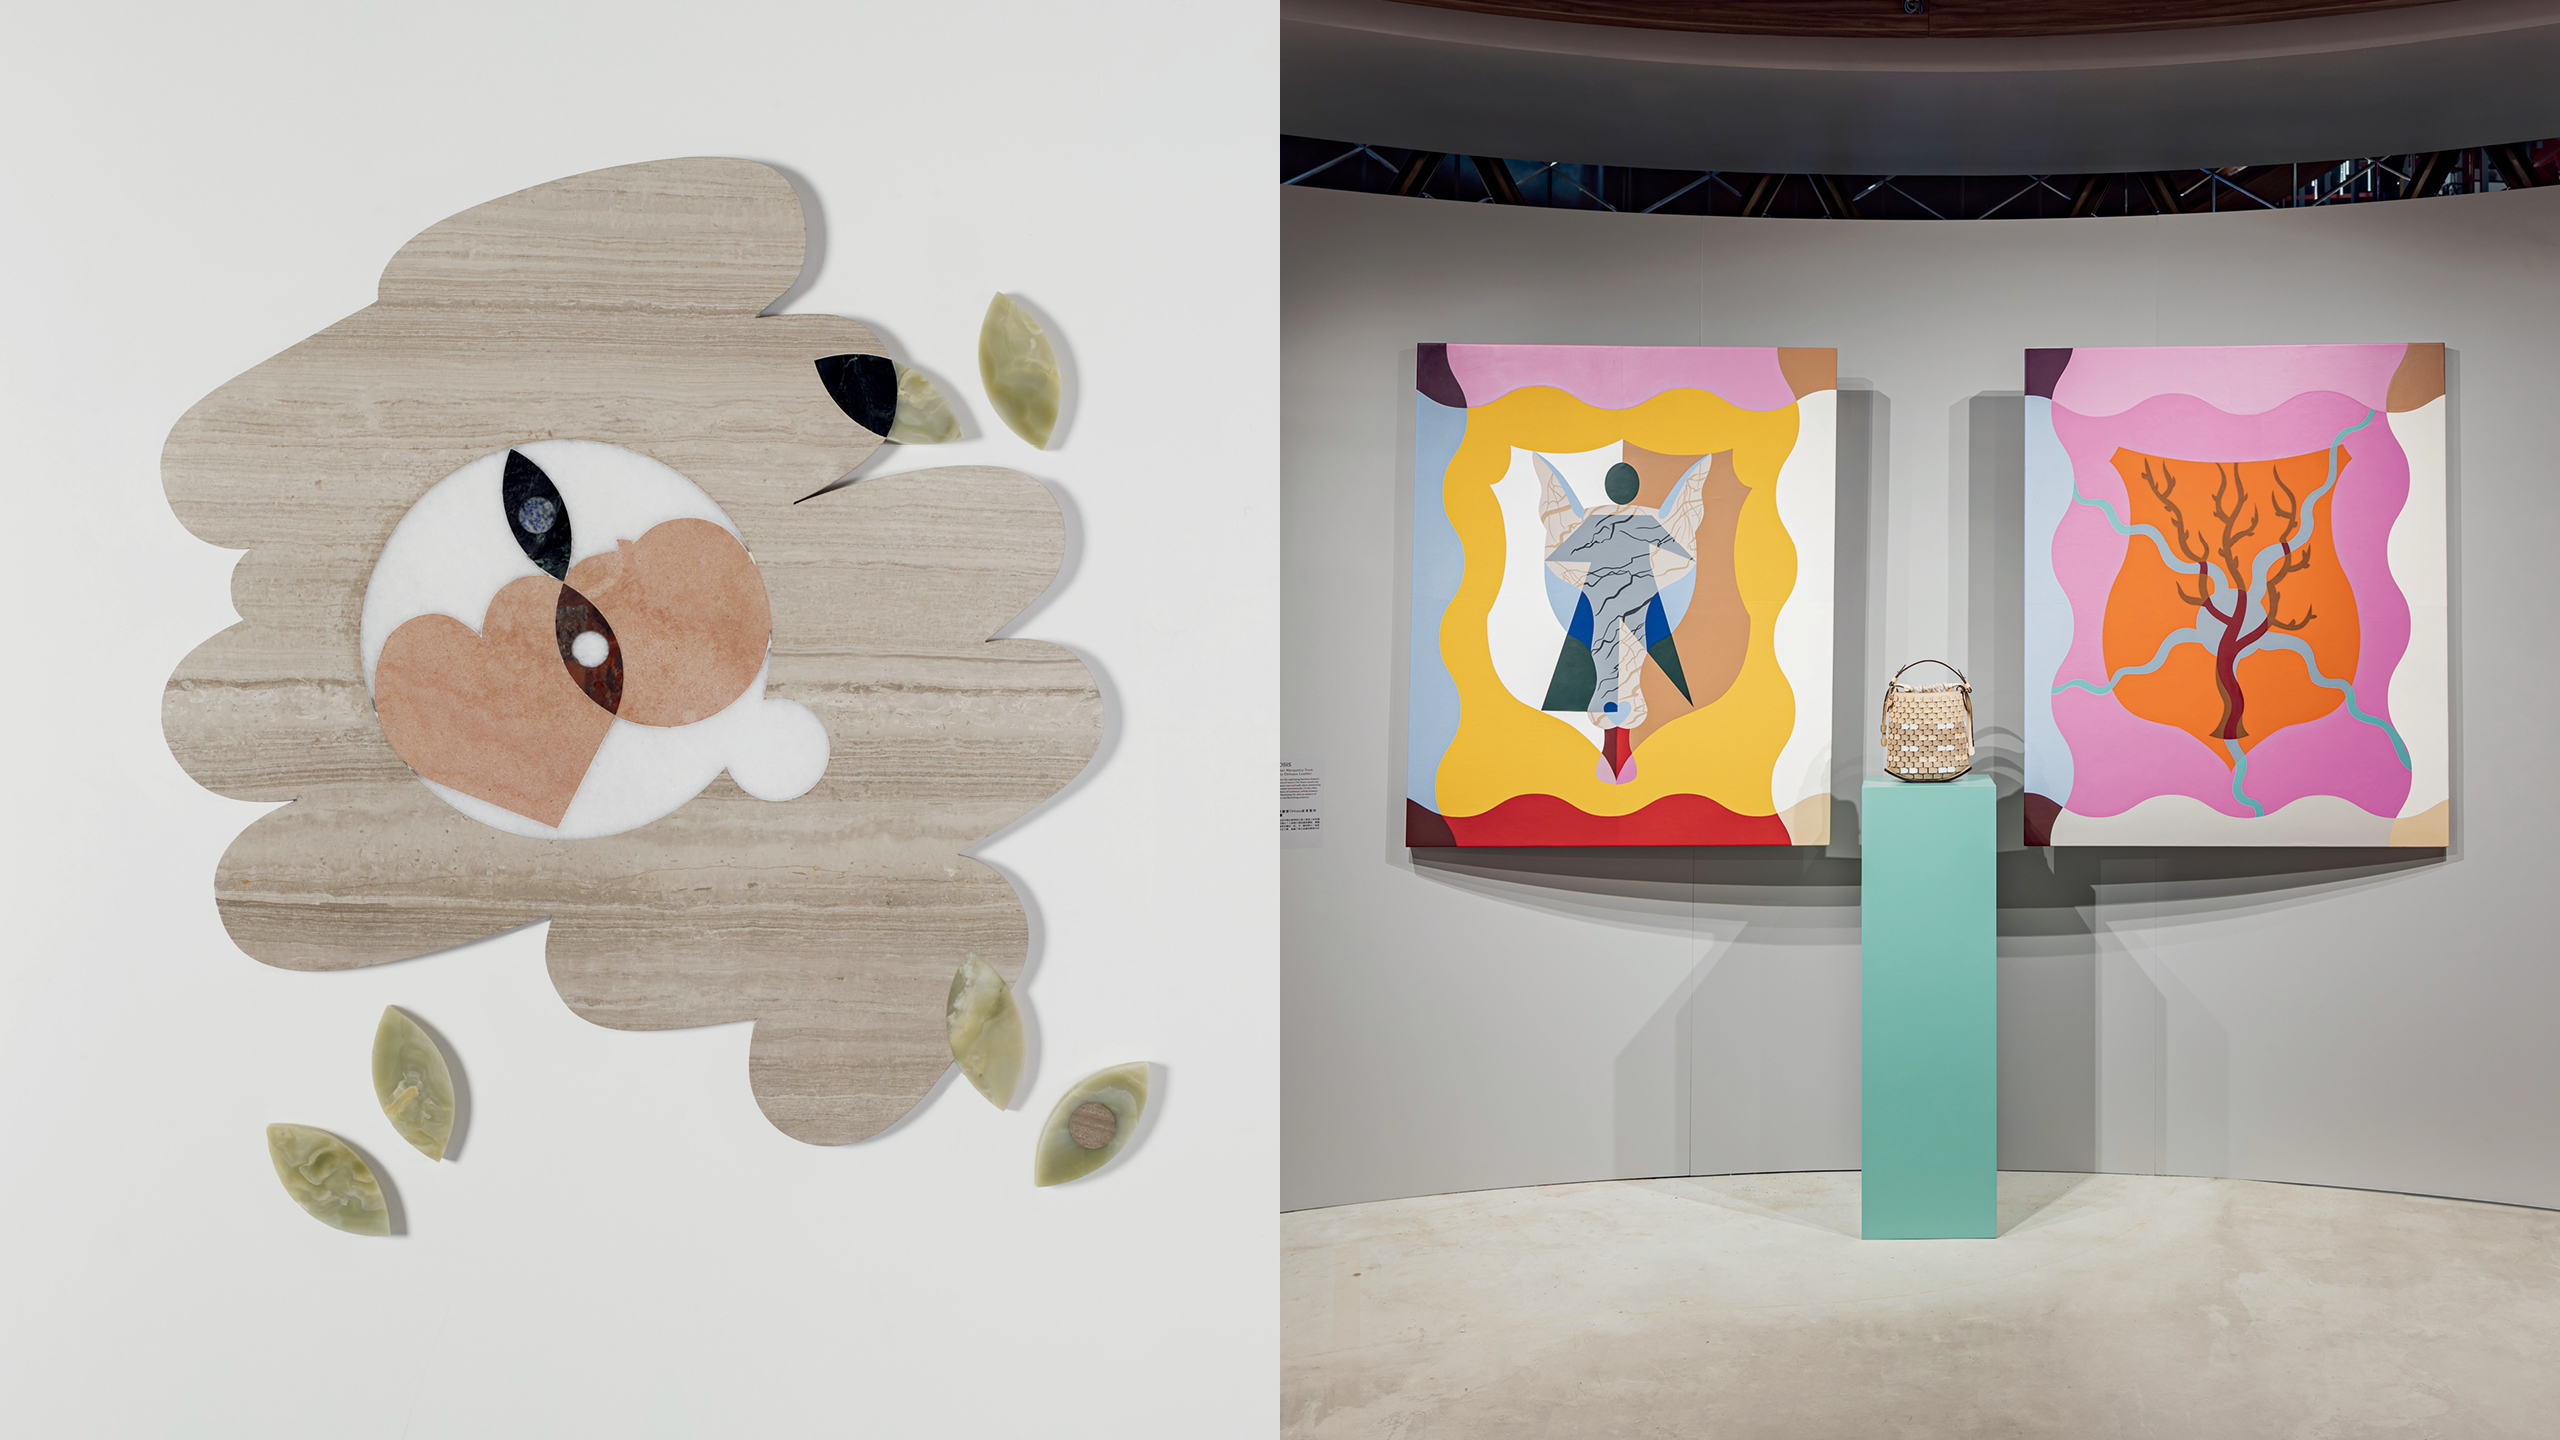 （左）以大理石、石英岩、花崗岩和瑪瑙材質組成的地板雕塑， 彷彿在雨後走過一處水窪時浮現的倒影，看見的是童趣造型的愛心和蘋果，還是回望的雙眸？ Kasper Bosmans 希望 人們以低頭的方式凝視這件作品，往內心深處探索回答。 （右）今年3月為了慶祝香港巴塞爾藝術展（Art Basel）， Delvaux 選址 K11 MUSEA 多維展覽活動空間舉辦獨家藝術展，帶來 Kasper Bosmans 的作品與亞洲藝術愛好者面對面。